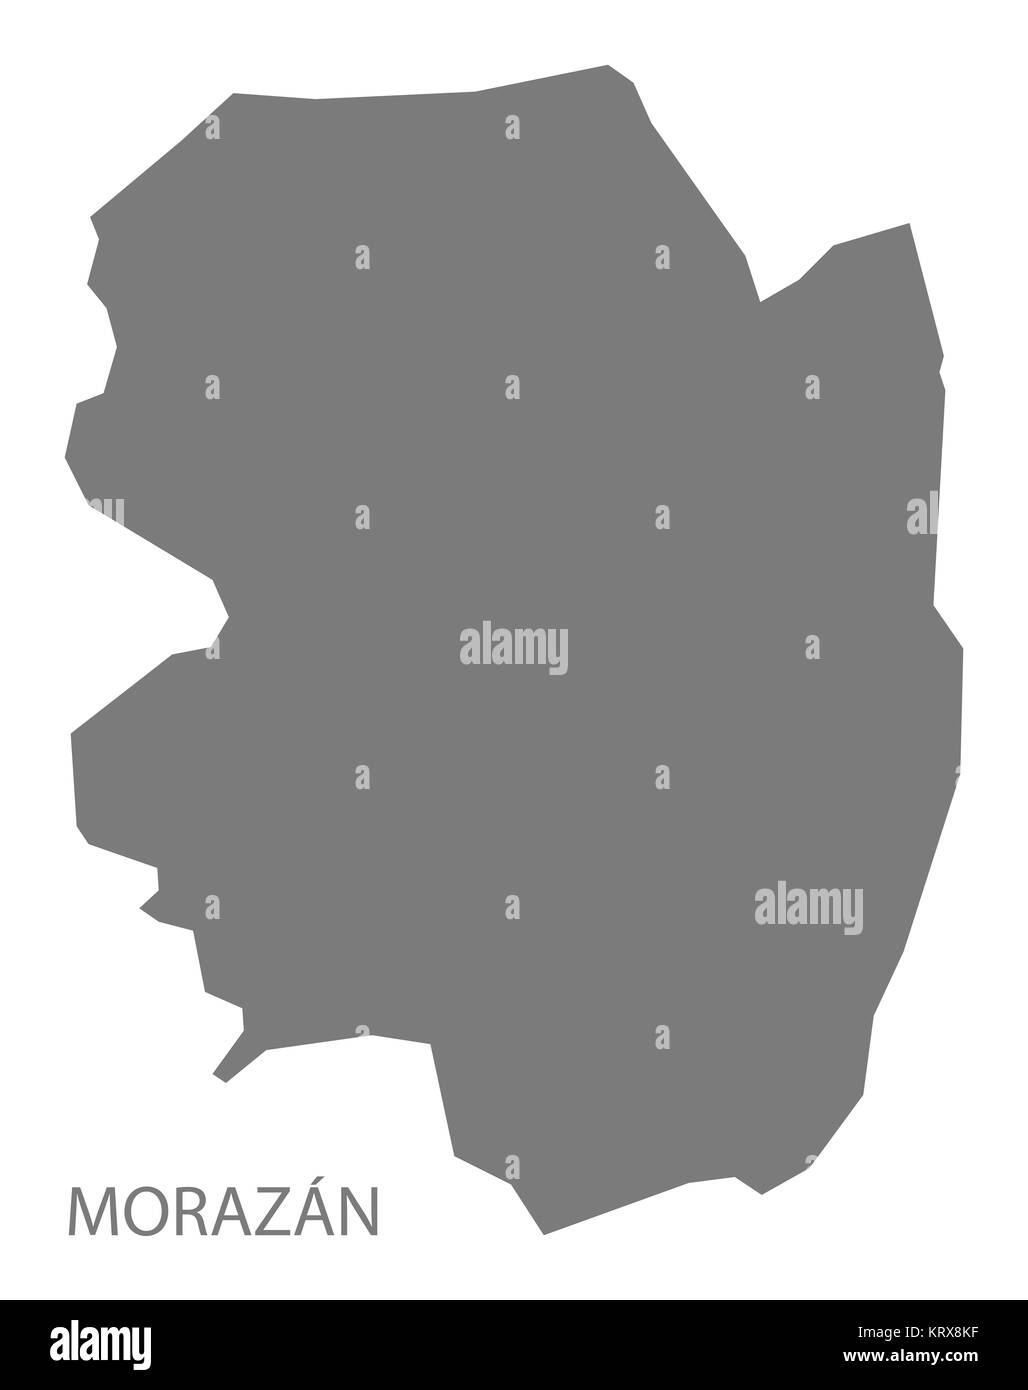 Morazan El Salvador Map grey Stock Photo